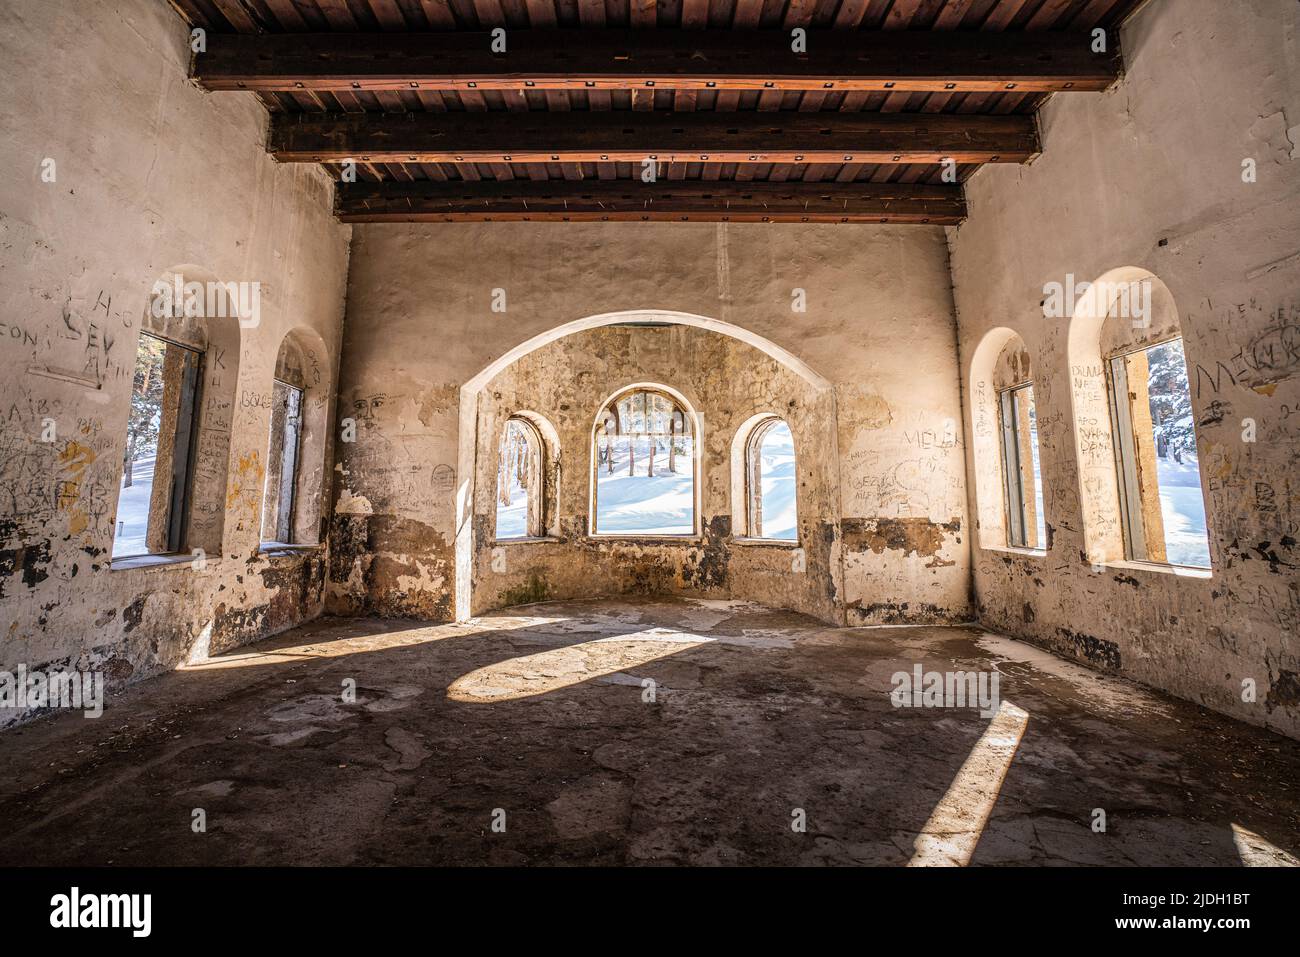 Vue intérieure du Palais Catherine en ruines et abondé à Kars, Turquie. Photo de haute qualité Banque D'Images